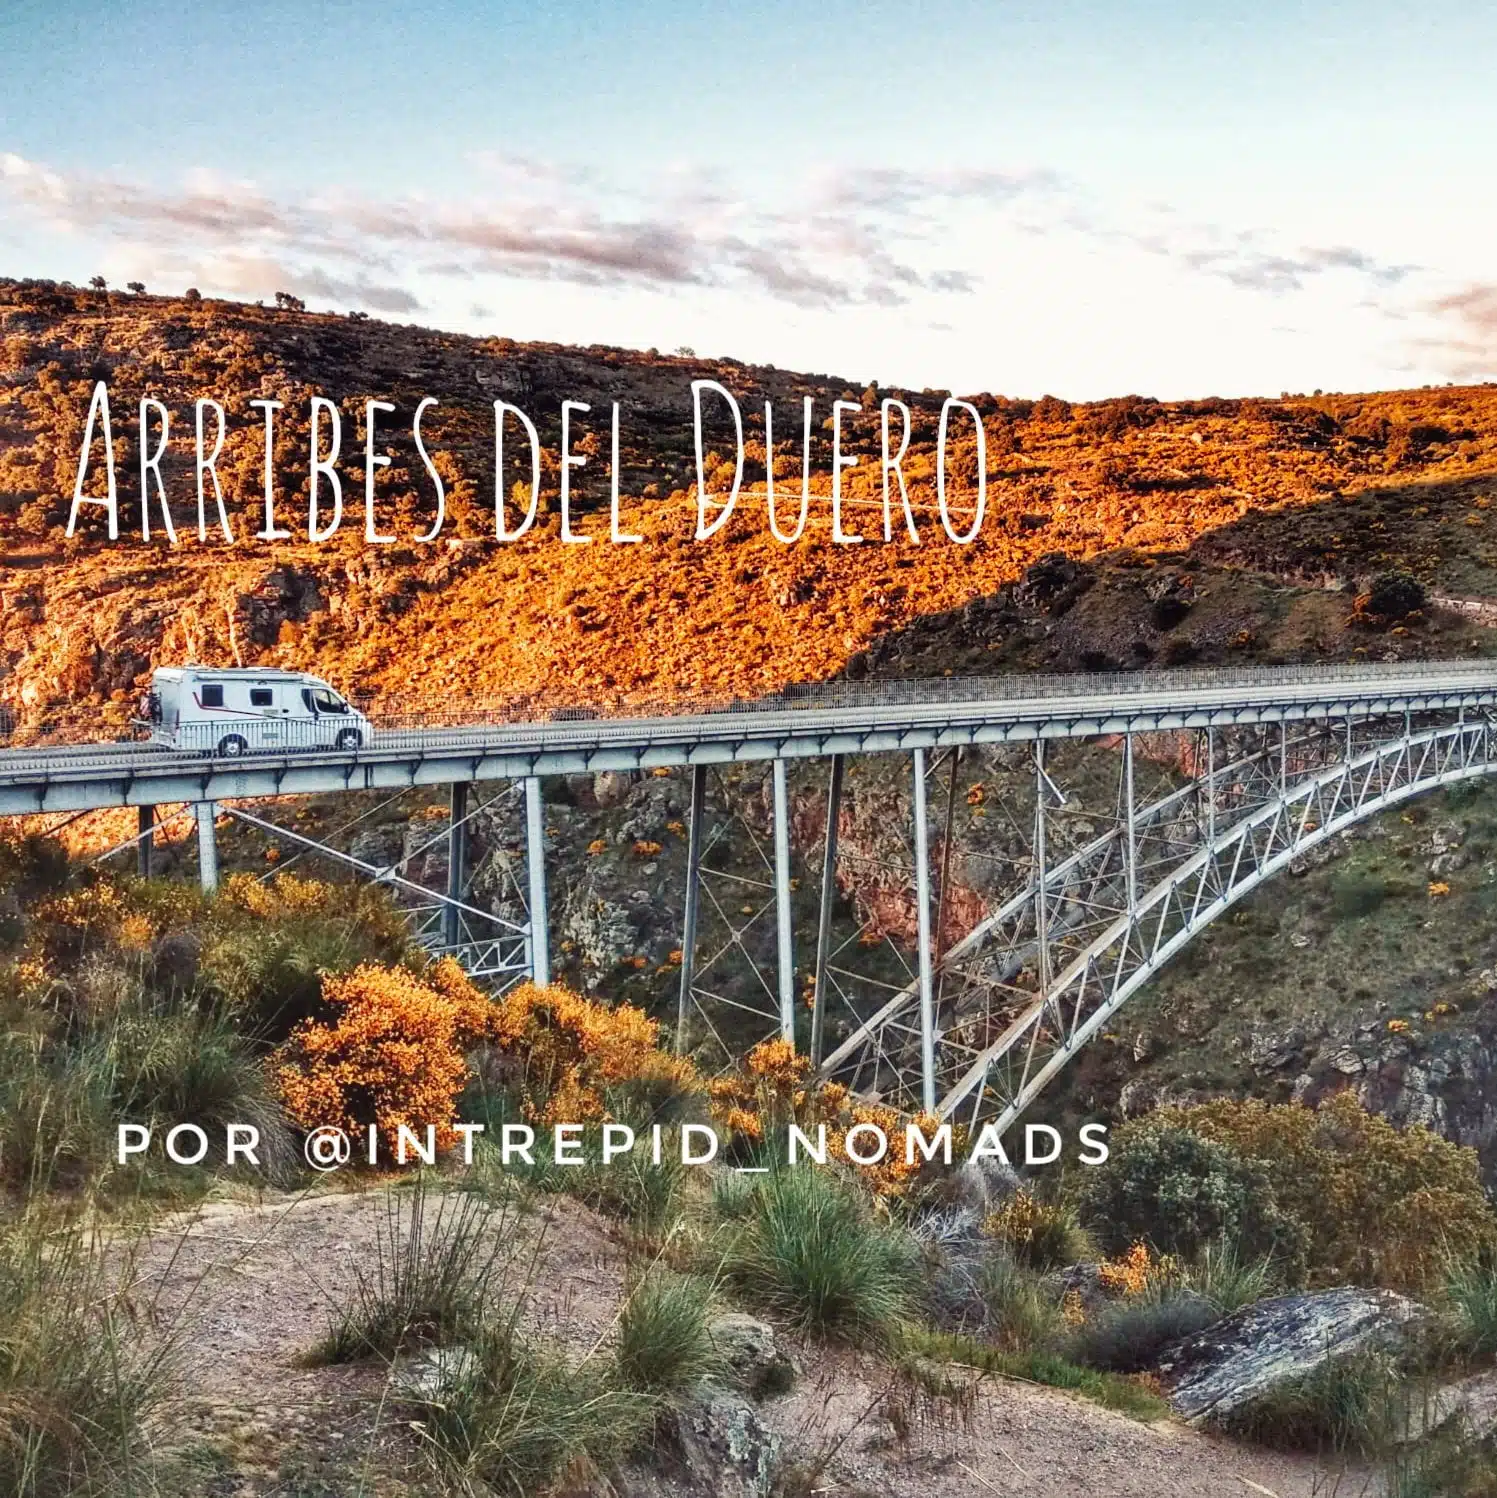 Lire la suite de l'article Escapade à travers les Arribes del Duero par @intrepid_nomads